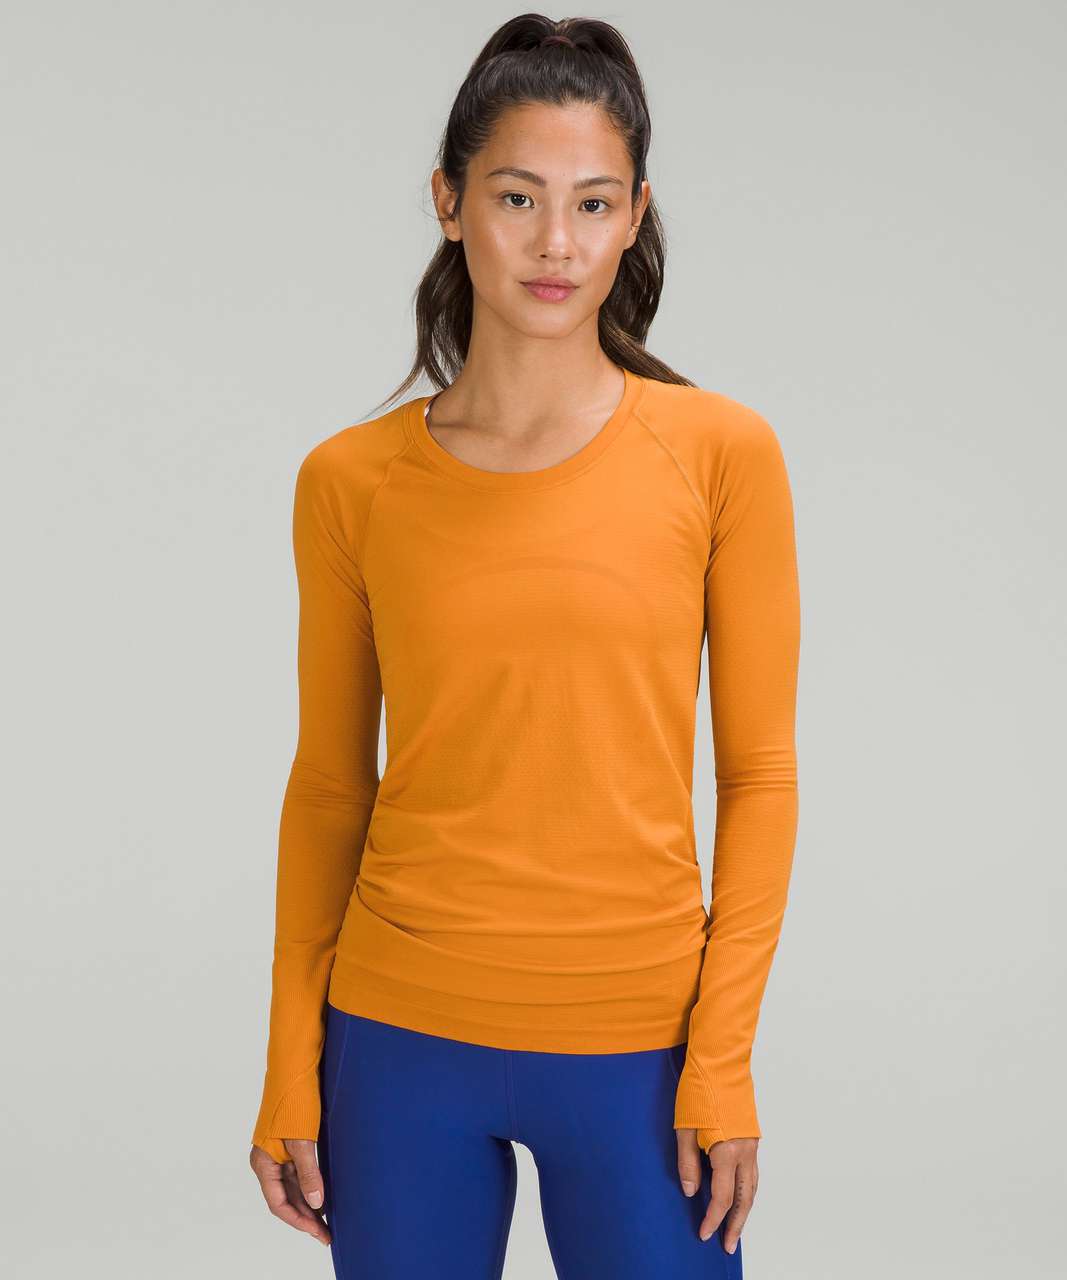 Lululemon Swiftly Tech Long Sleeve Shirt 2.0 - Autumn Orange / Autumn Orange